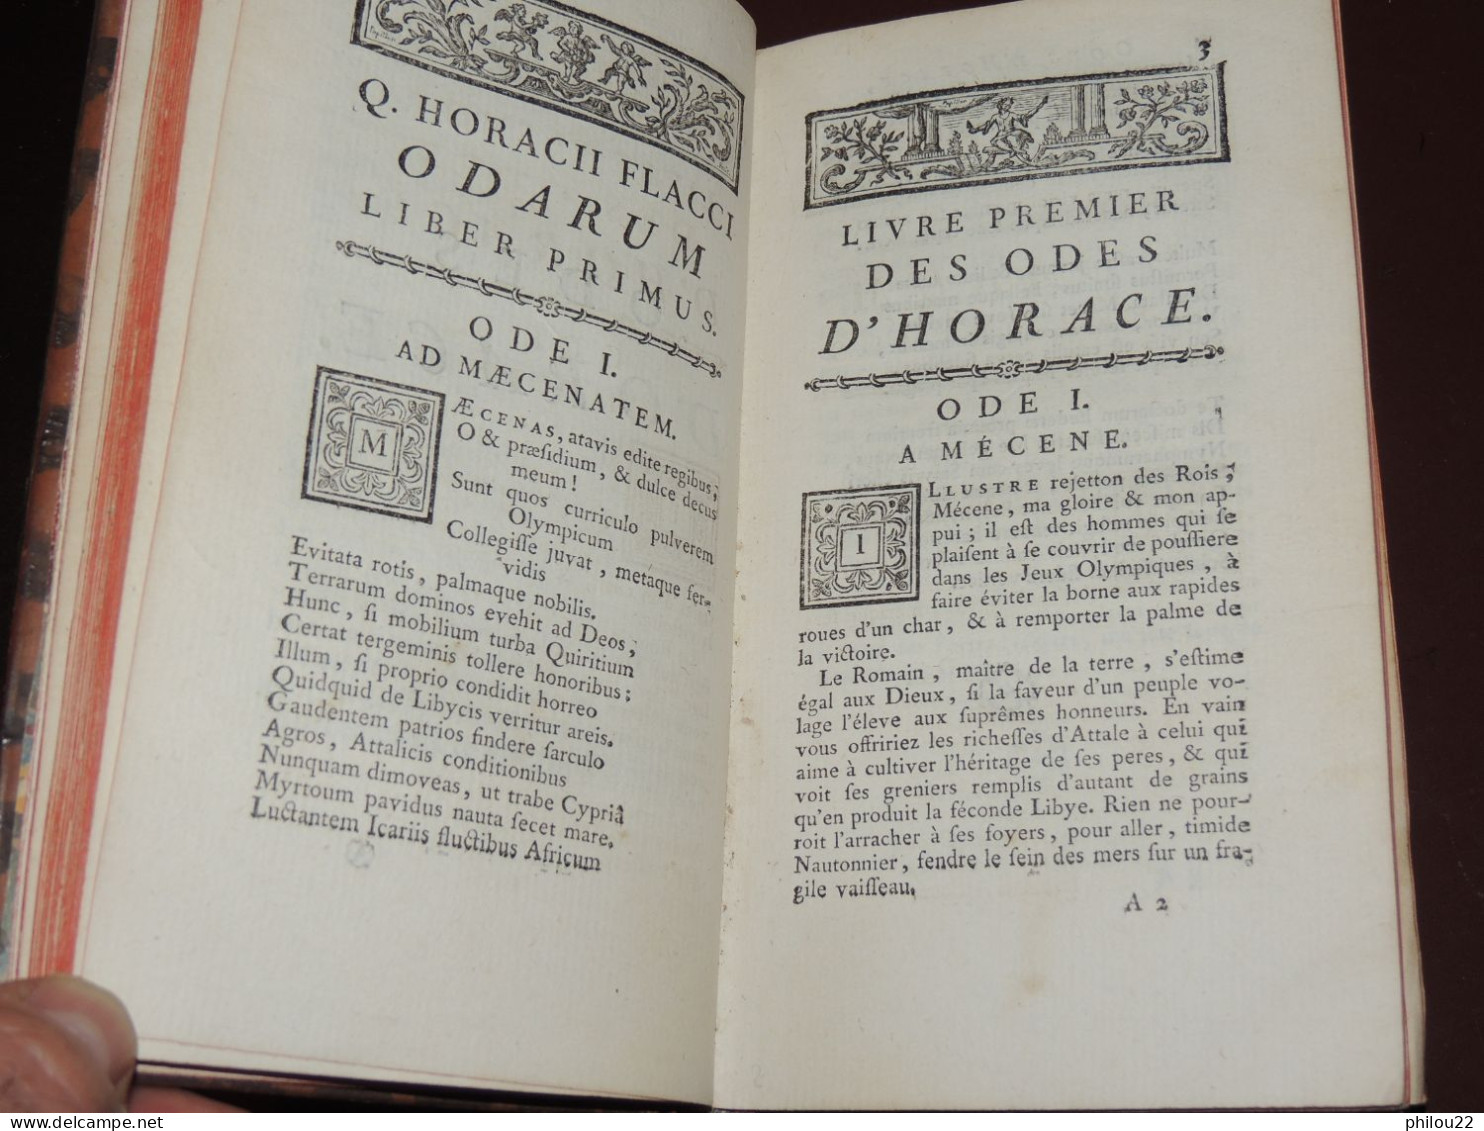 Odes D'Horace, Traduite Par Feu M. L'abbé Des Fontaines...  Berlin 1759 - 1701-1800